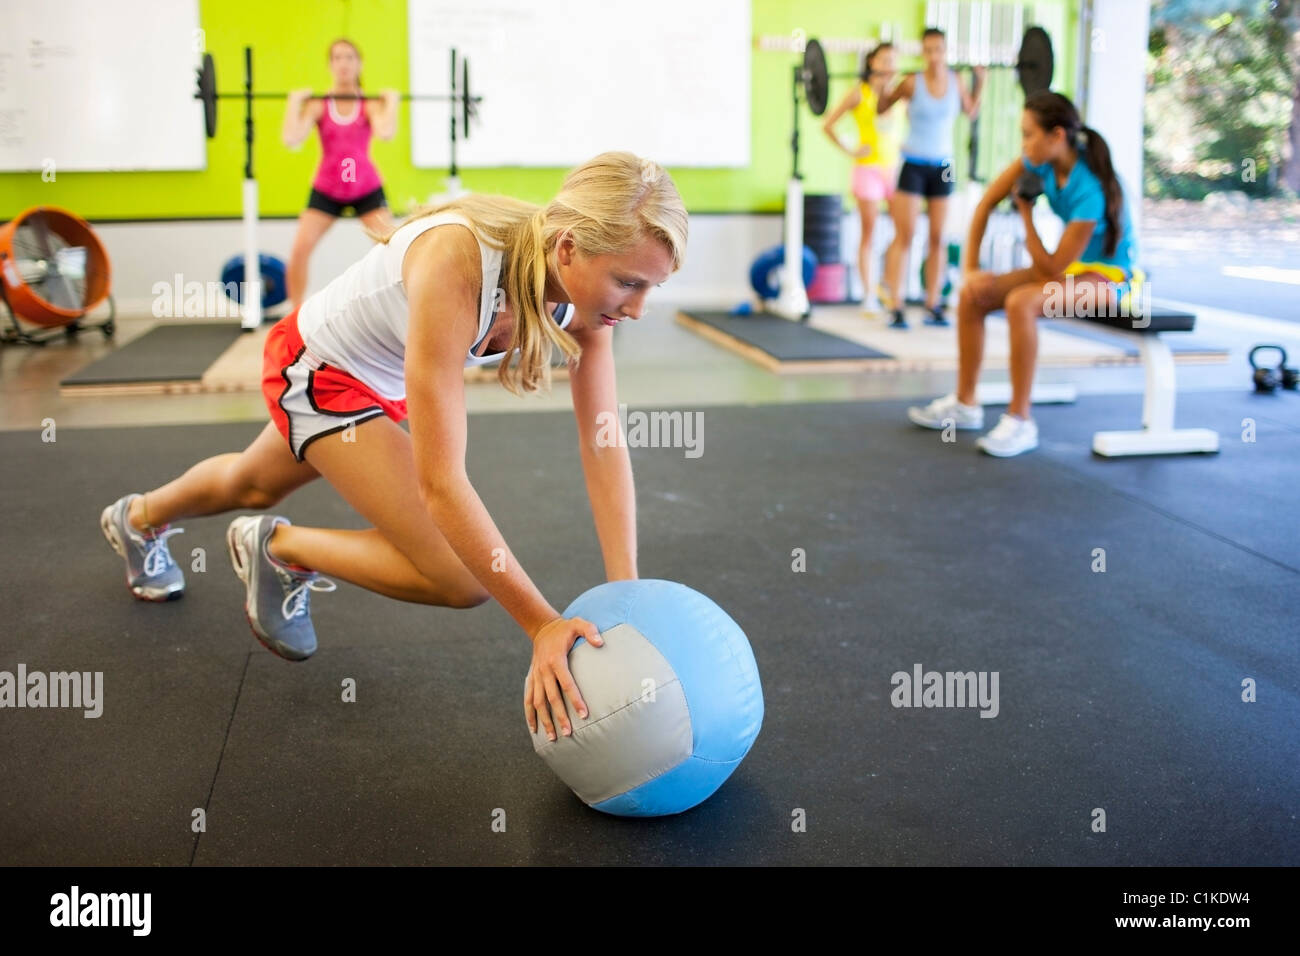 Fotos de Chicas Jóvenes Haciendo Ejercicios Fitness Gimnasio Entrenamiento  Gimnasio Para Formación - Imagen de © MastrVideo #312255936